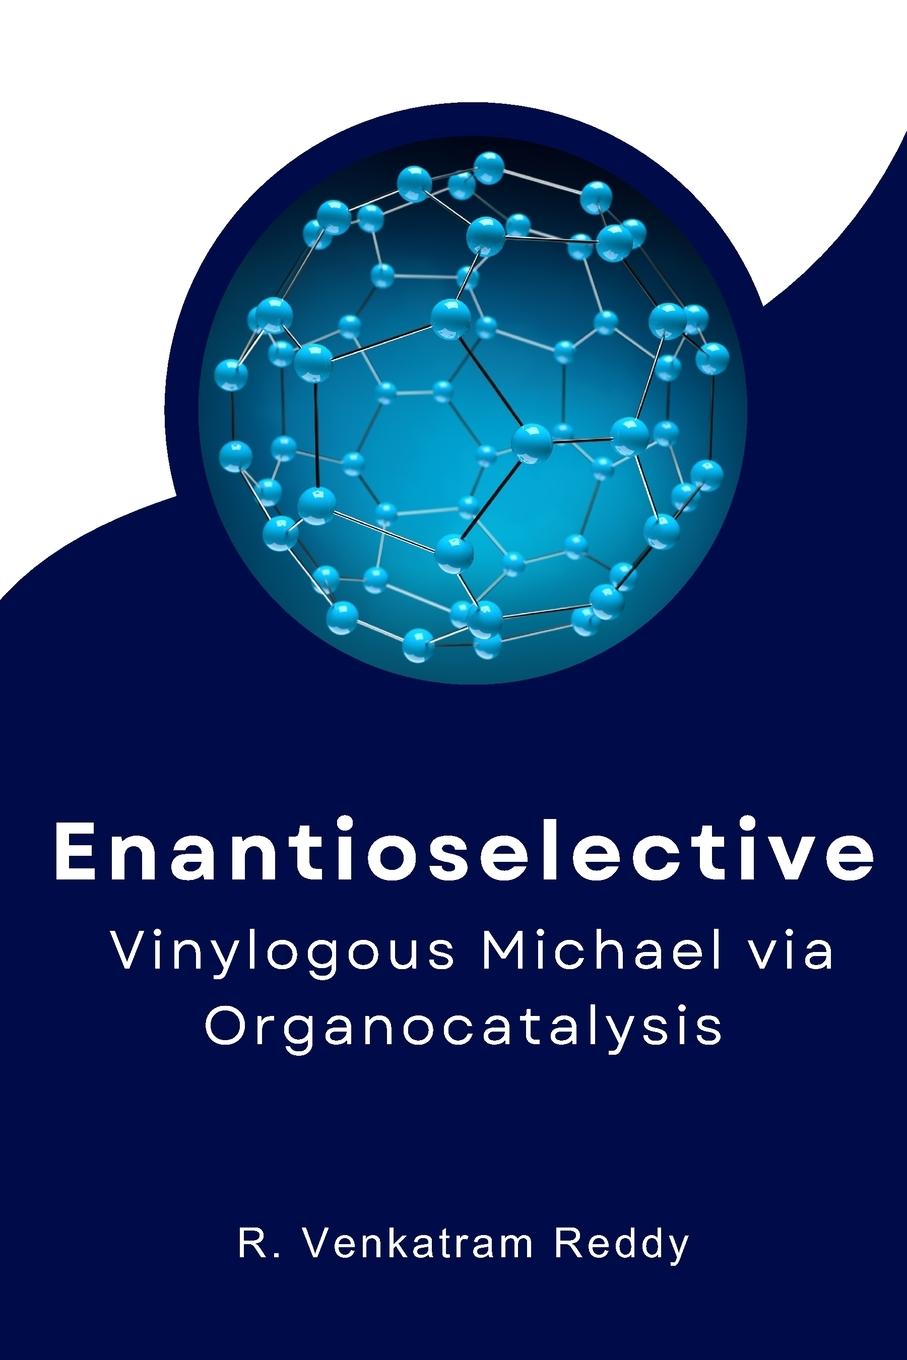 Carte Enantioselective Vinylogous Michael via Organocatalysis 